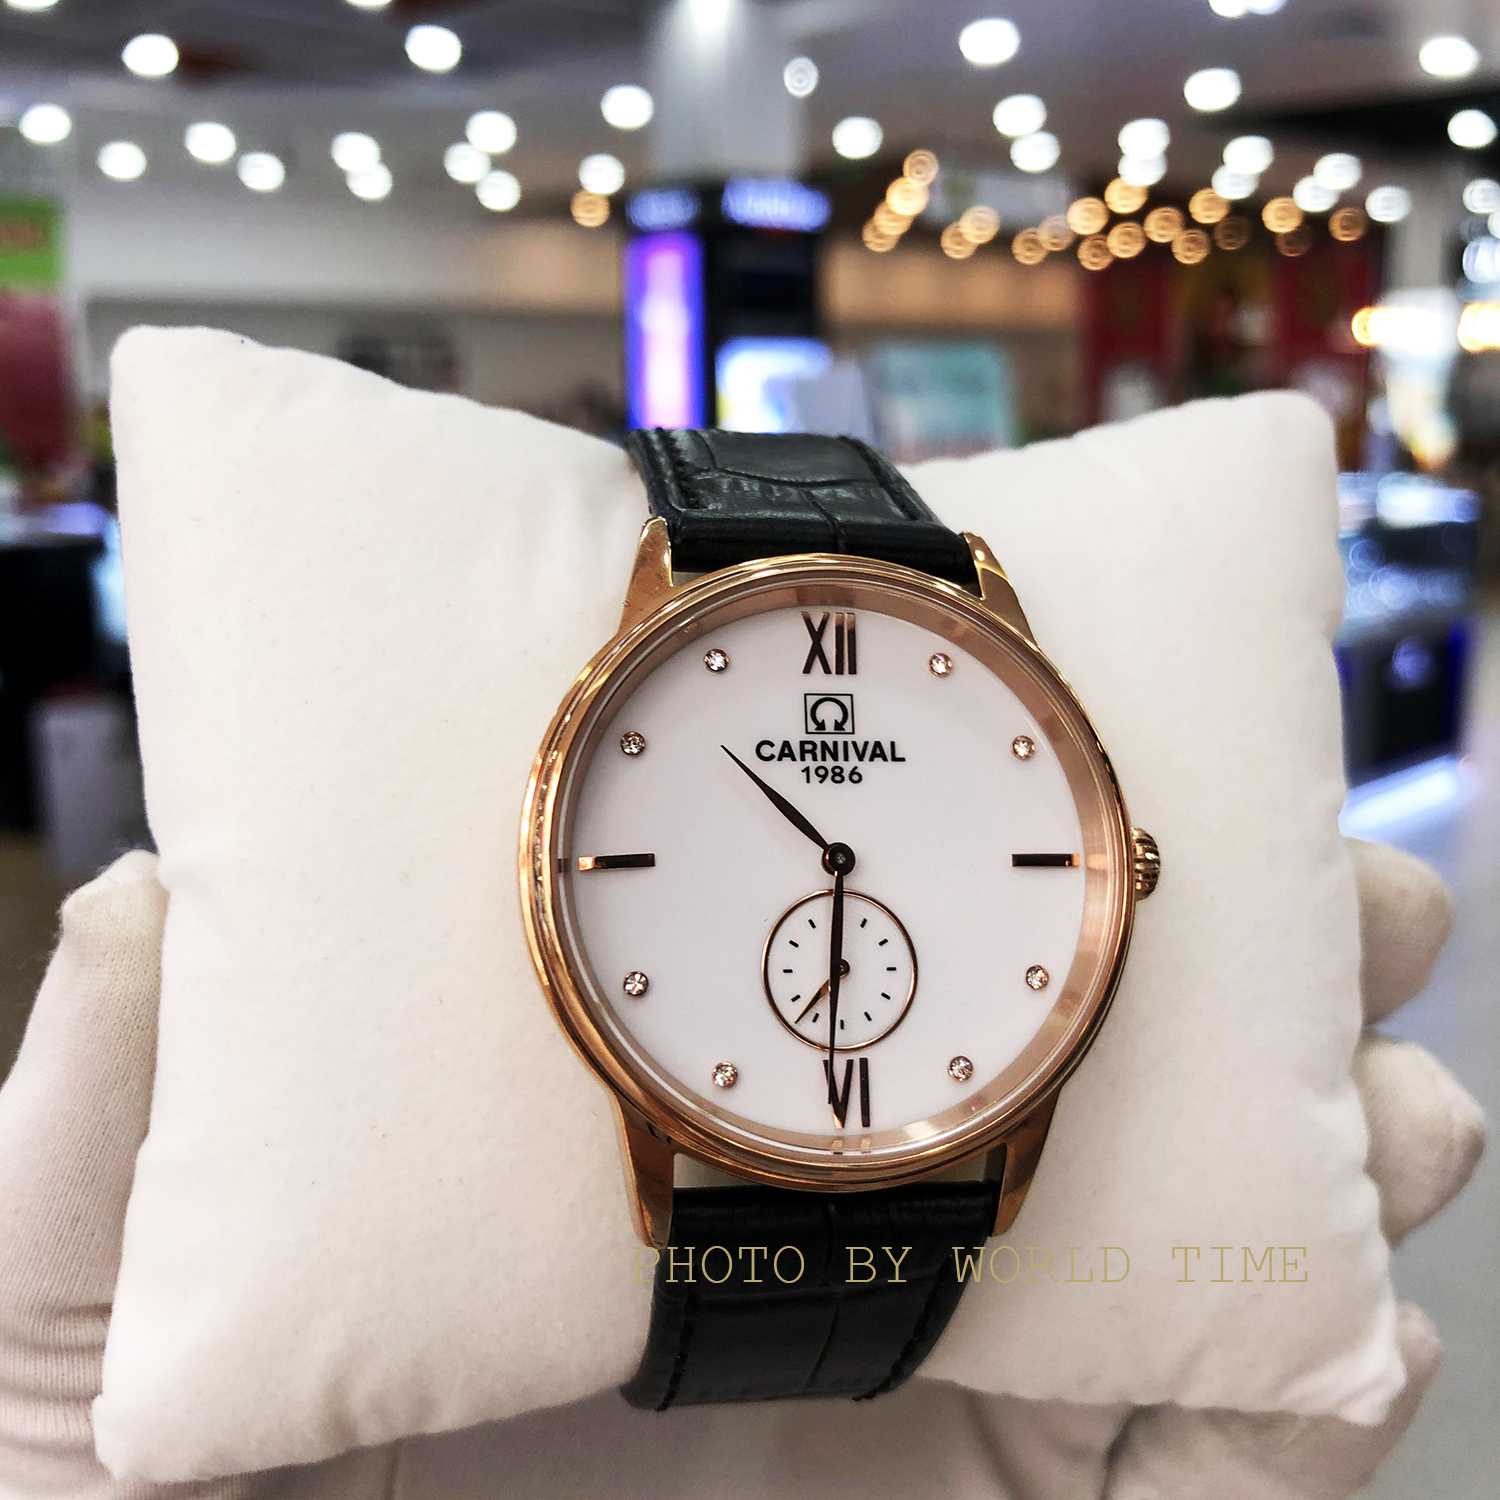 HOÀN TIỀN 15% - Đồng hồ chính hãng đồng hồ nam dây da Carnival 8708G  chính hãng Full Box kính sapphire chống xước  chống nước 3atm bảo hành 36T toàn quốc